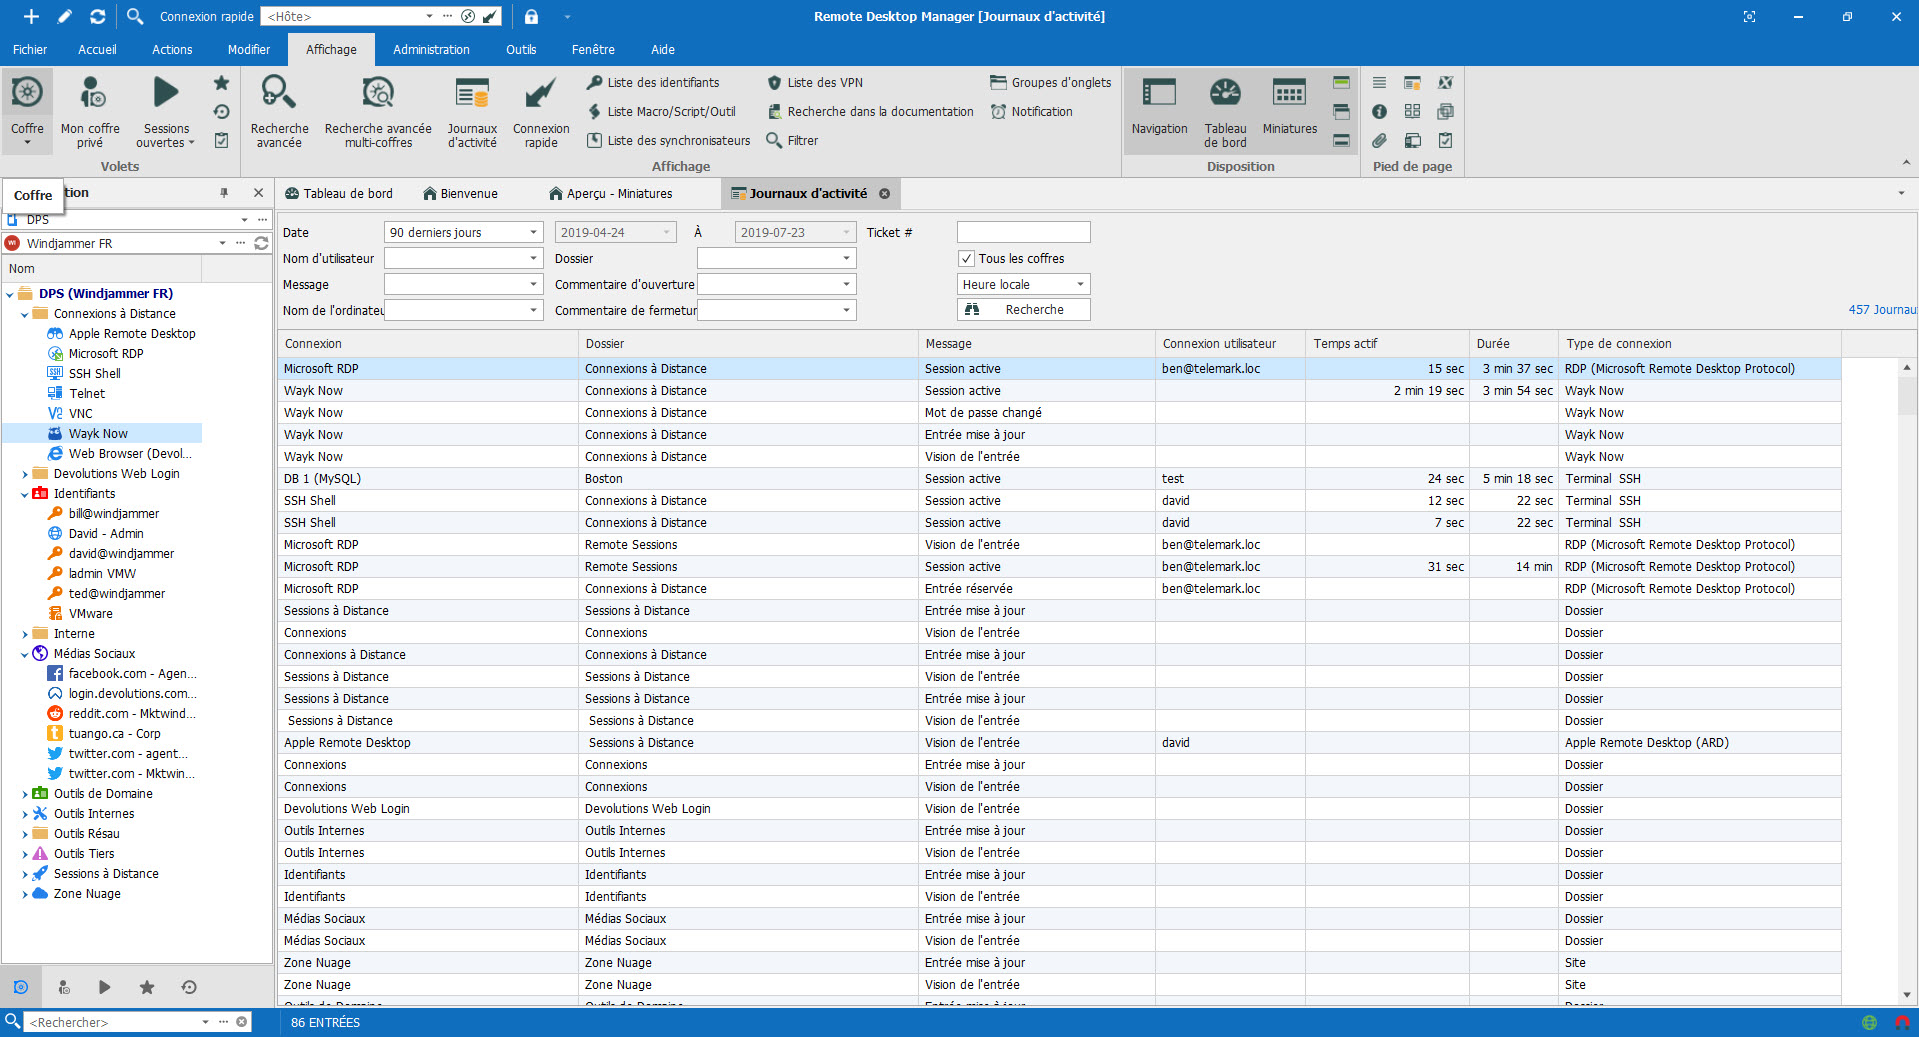 Auditez toutes les activités avec des rapports et journaux personnalisés - Remote Desktop Manager